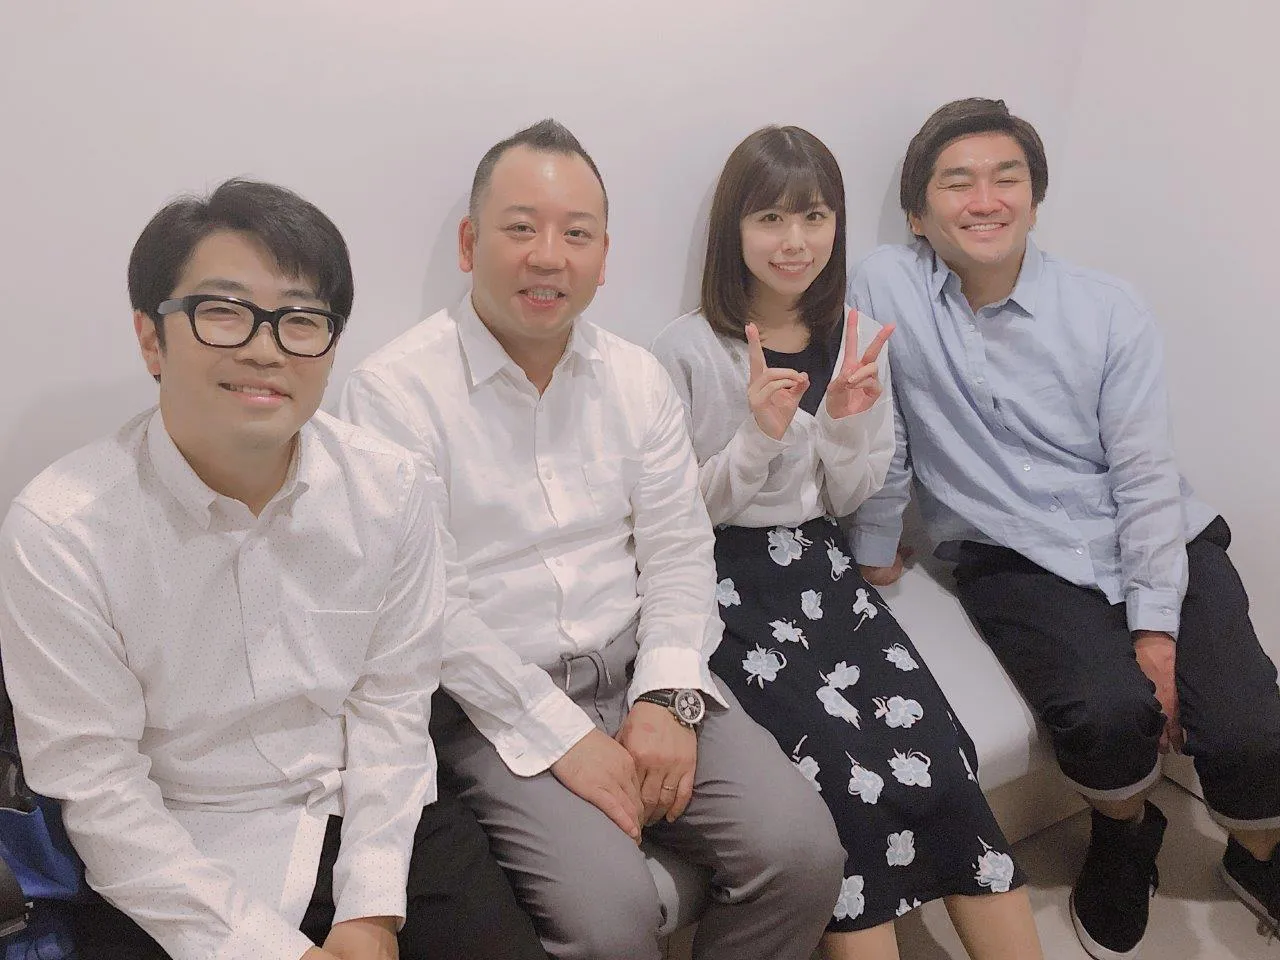 (写真左から)鈴木拓、西村瑞樹、有村藍里、徳井健太らチーム“じゃない方”